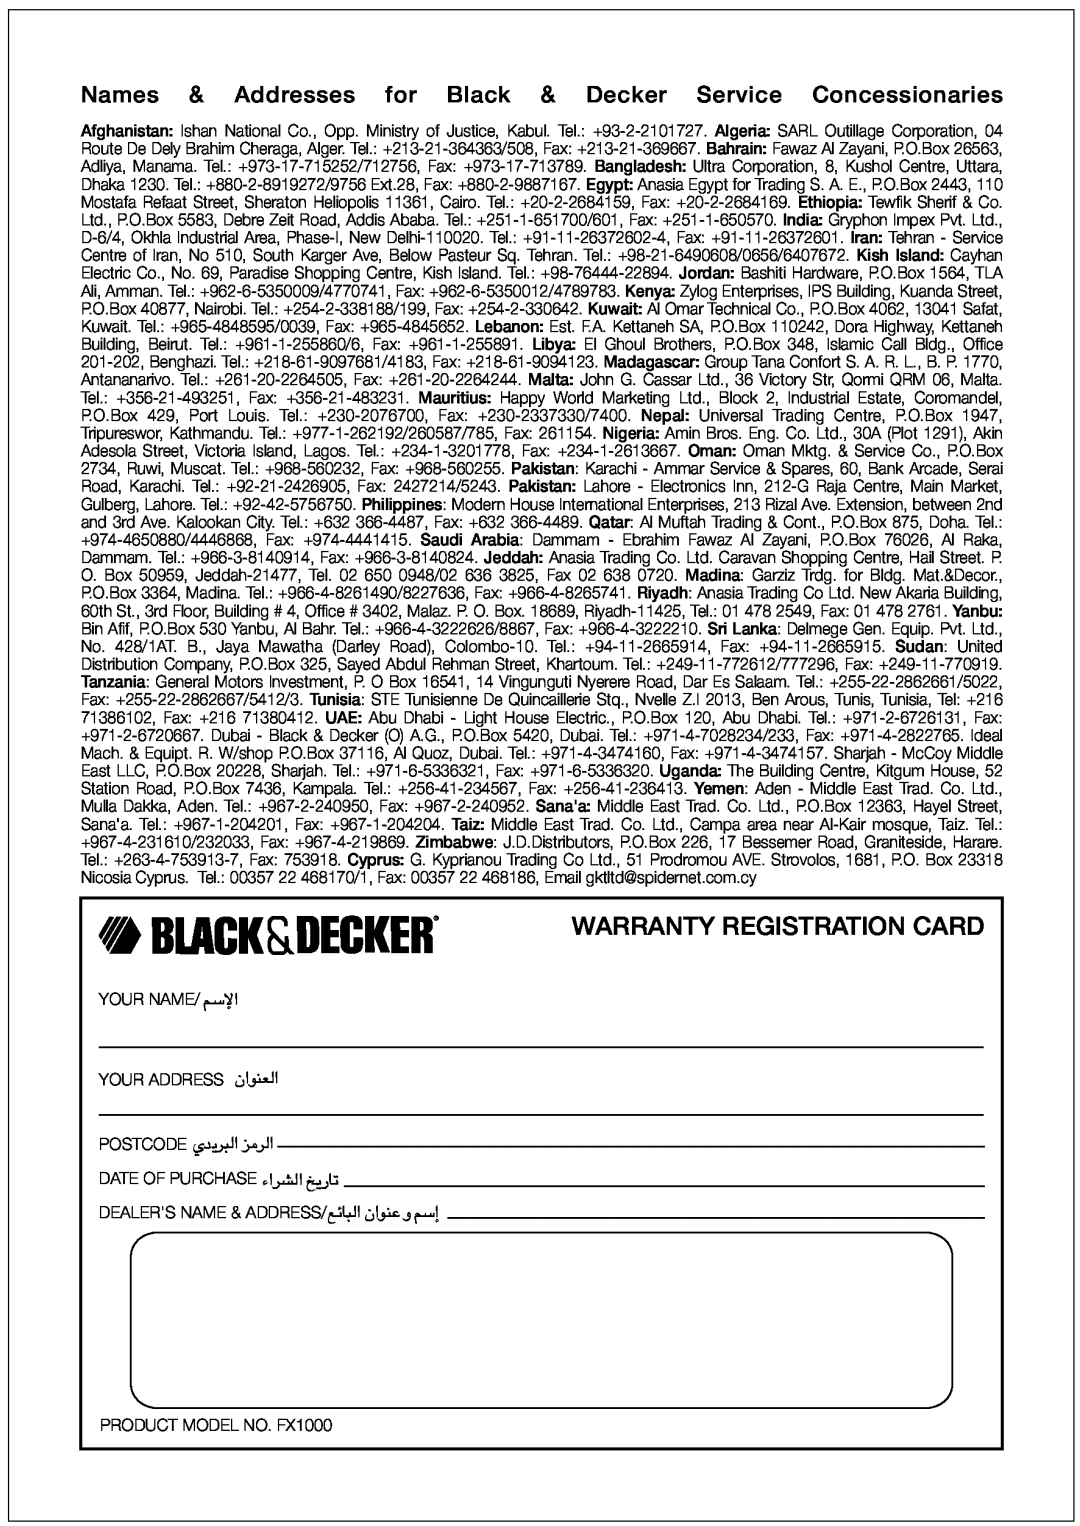 Black & Decker FX1000 manual Warranty Registration Card, Names & Addresses for Black & Decker Service Concessionaries, «ùßr 